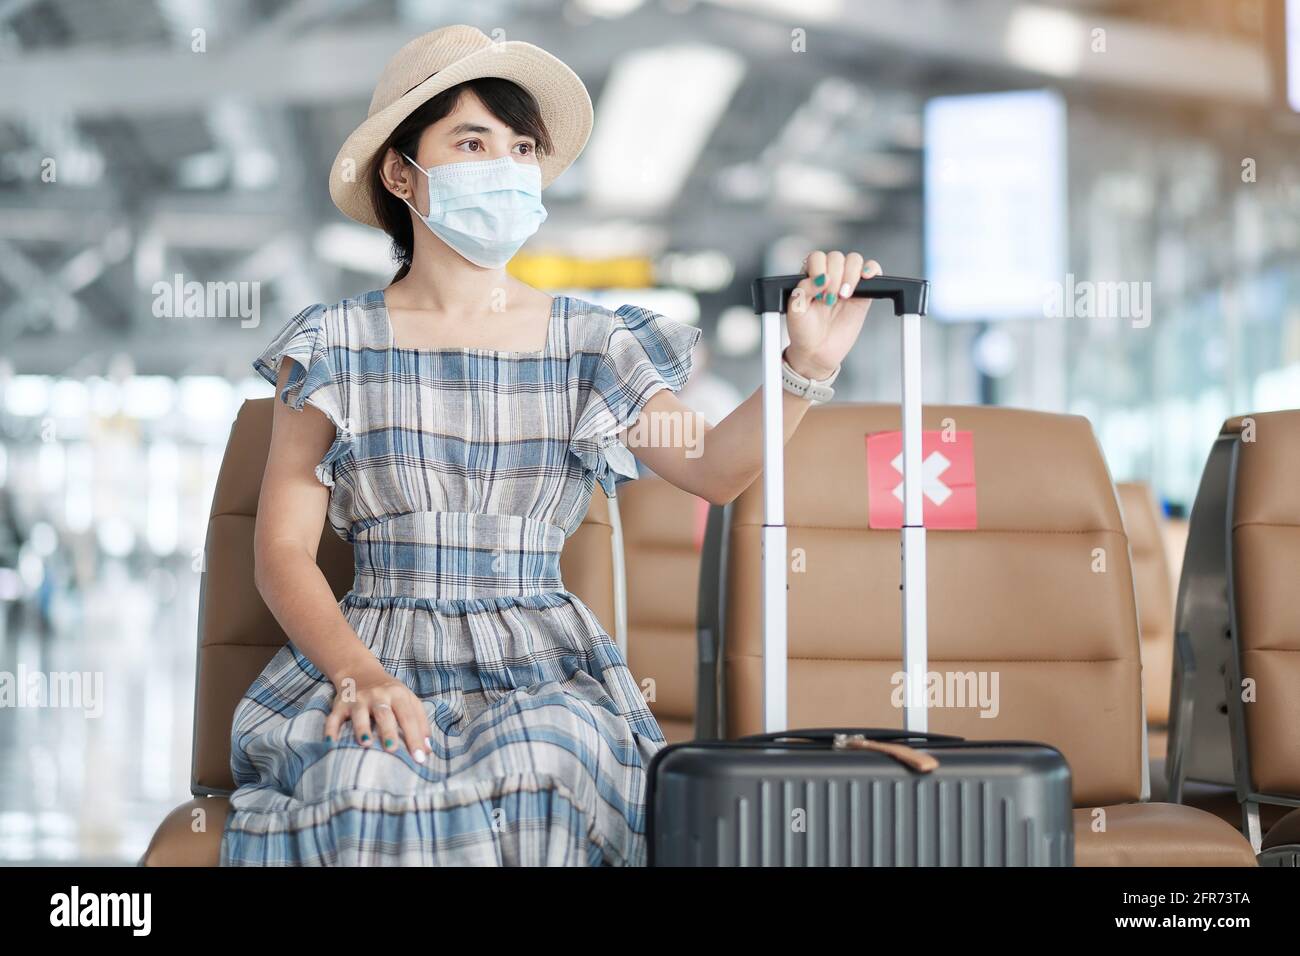 Jeune femme portant un masque chirurgical dans le terminal de l'aéroport, protection infection à coronavirus (Covid-19), femme asiatique voyageur assis sur le chai Banque D'Images